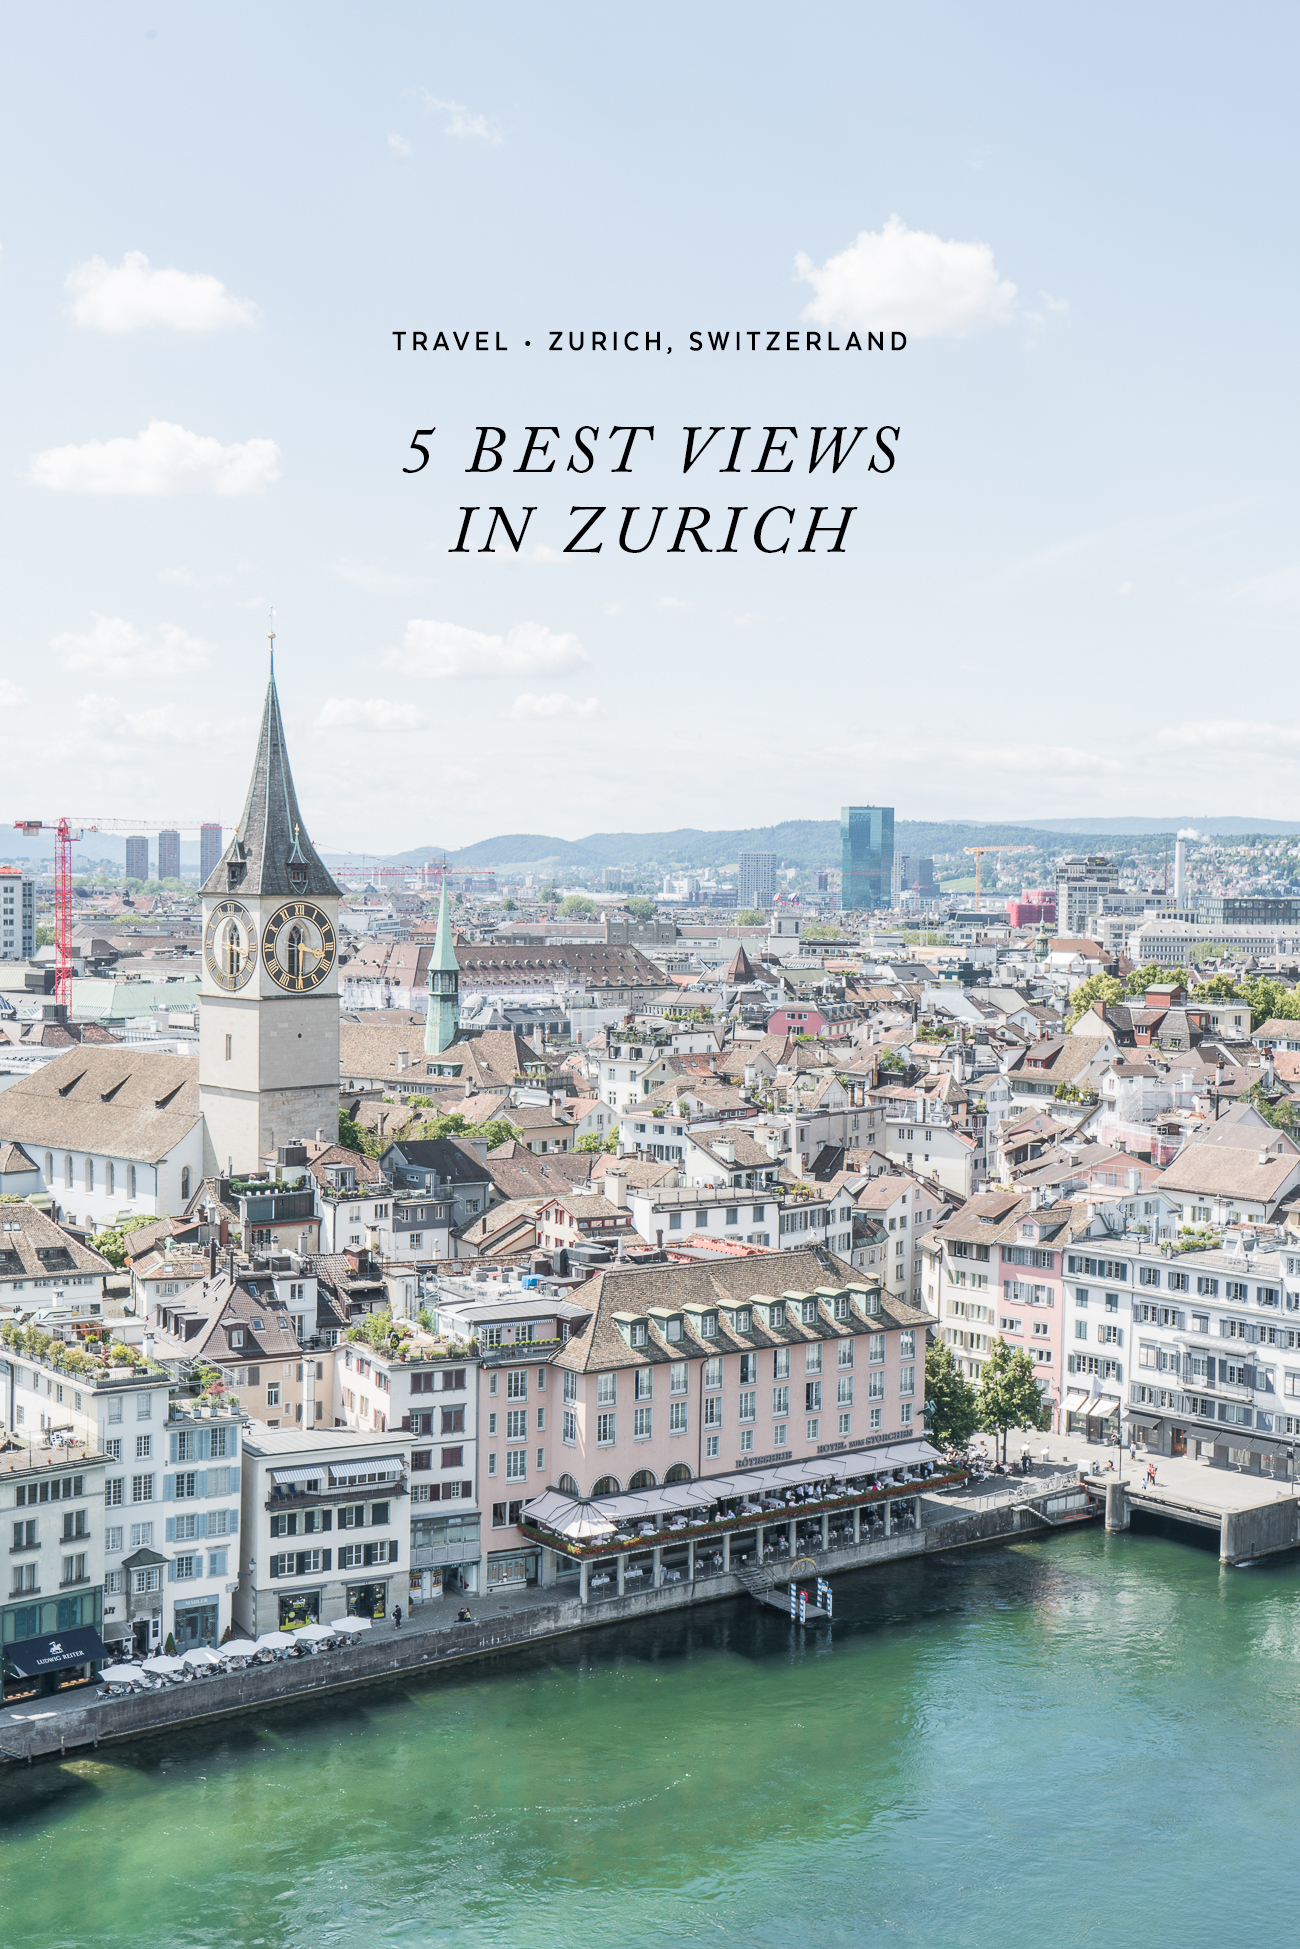 5 Best View Points in Zurich, Switzerland